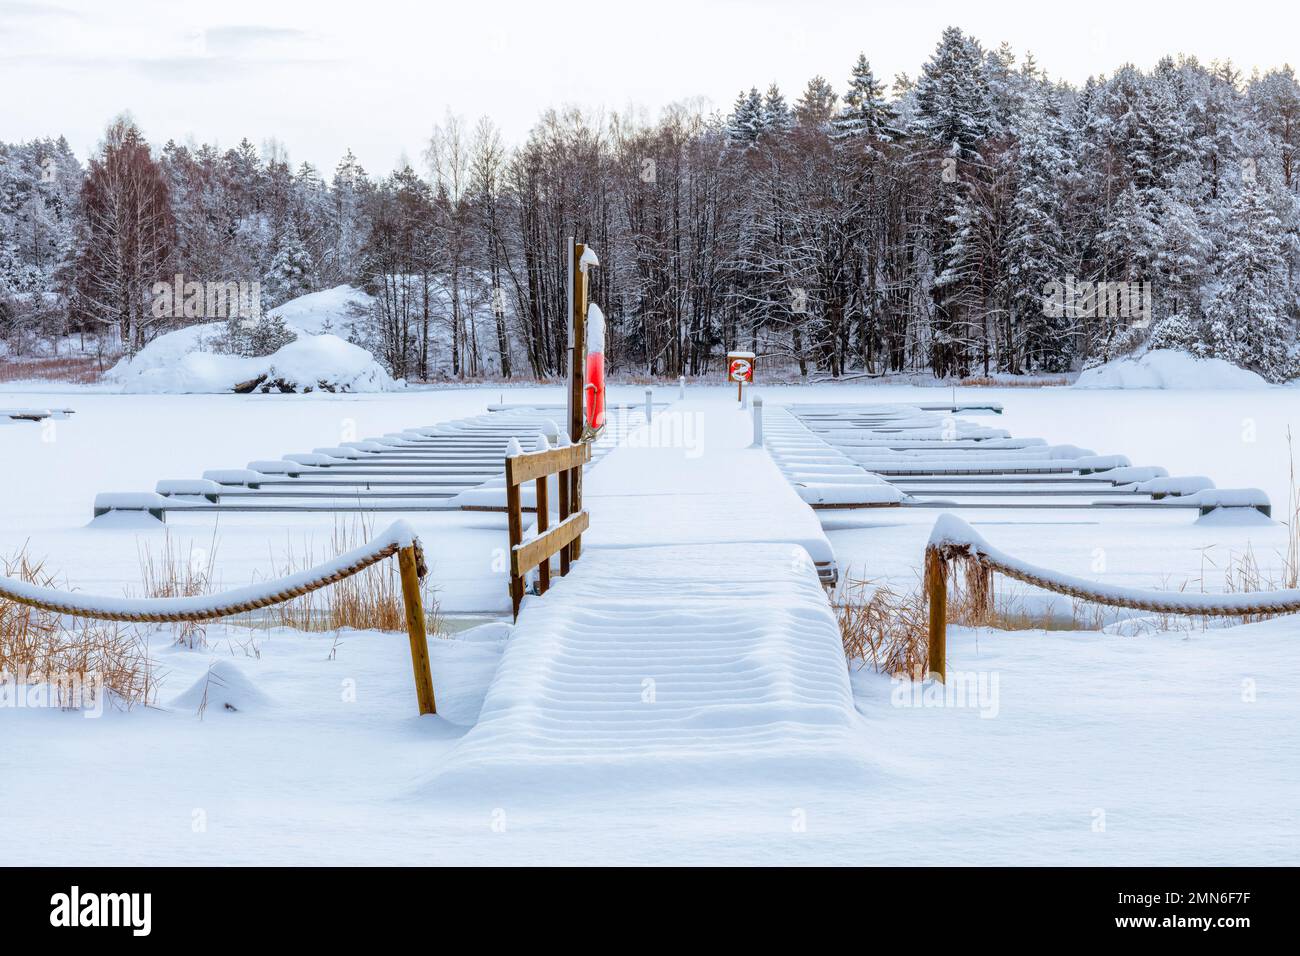 Petit port de plaisance couvert de neige. Journée d'hiver. Scandinavie Banque D'Images